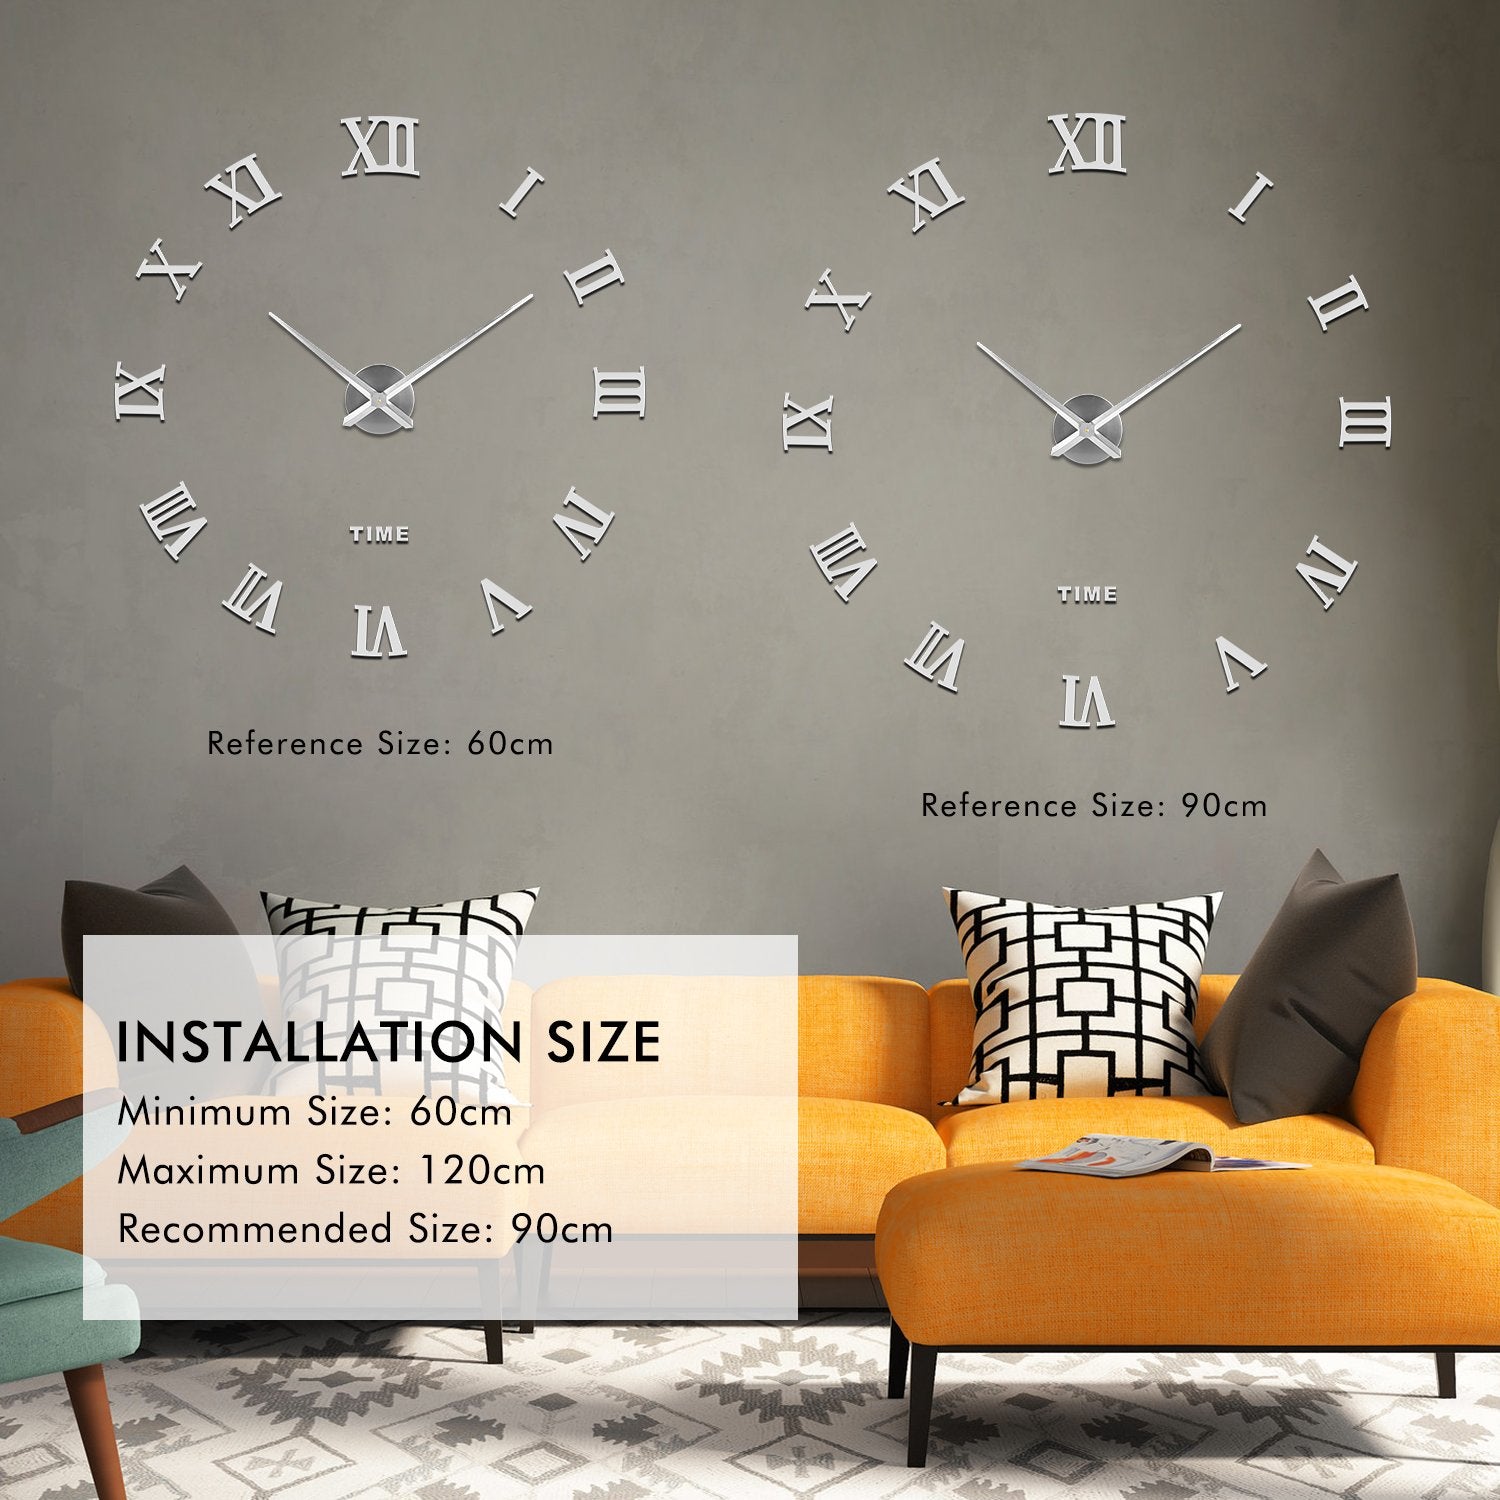 SOLEDI 3D Wall Clock Roman Numerals (Black)